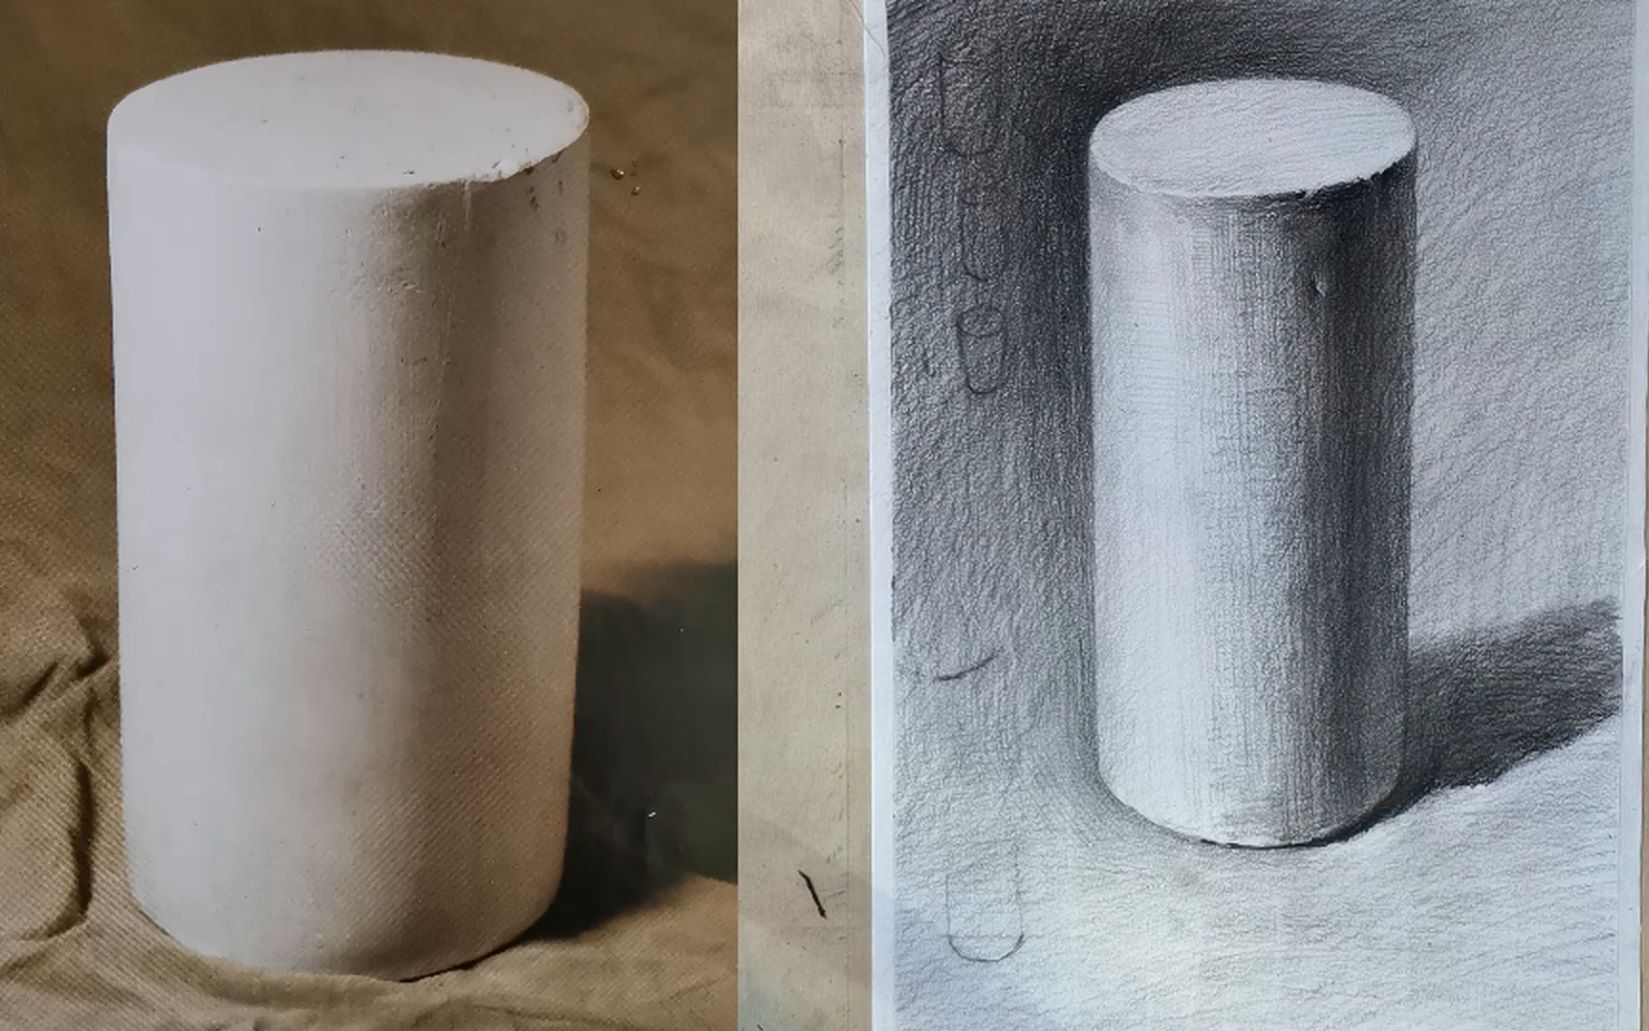 石膏圆柱体正方体组合素描教程 范画临摹步骤 - 哔哩哔哩